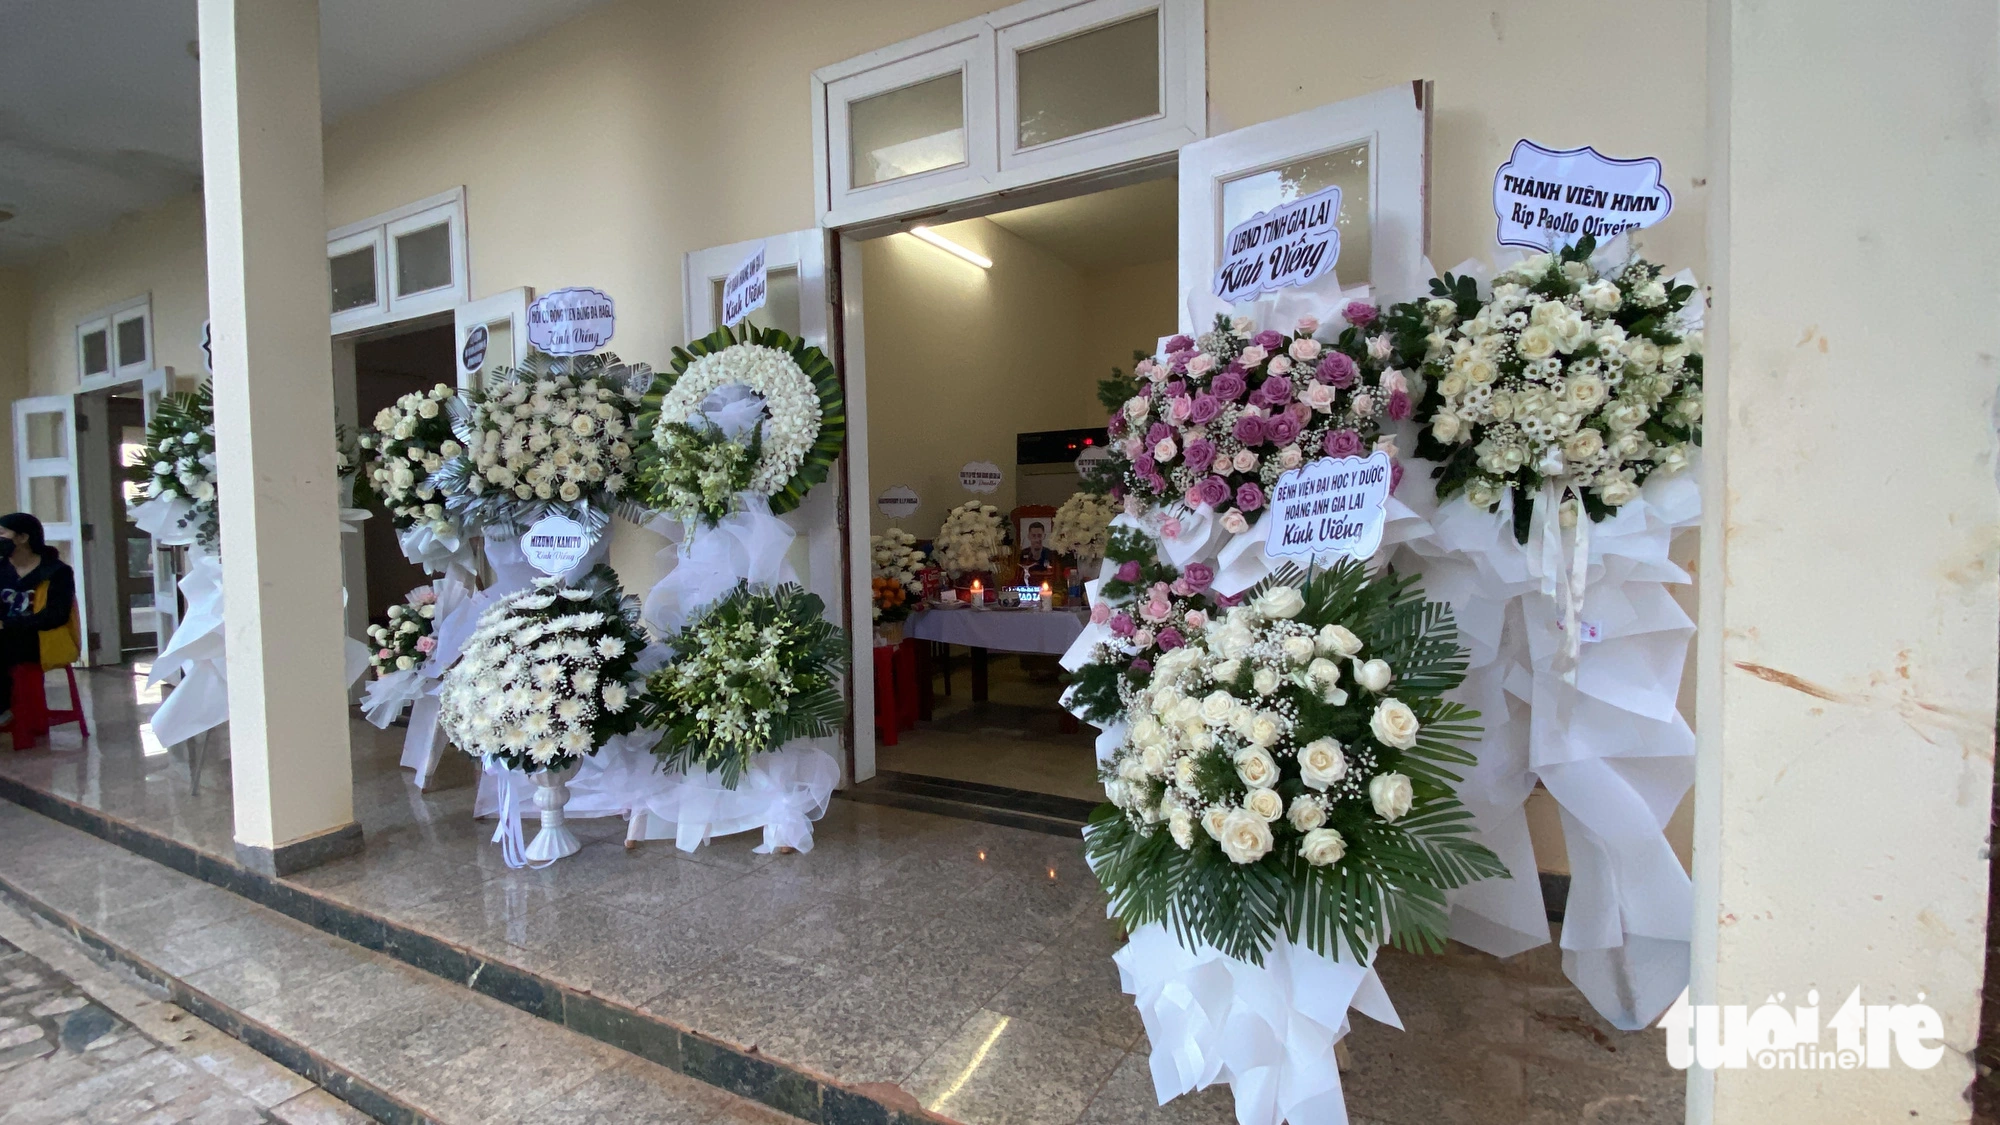 Vòng hoa từ khắp nơi gửi về lễ viếng của cựu tiền đạo 27 tuổi - Ảnh: ĐÌNH CƯƠNG